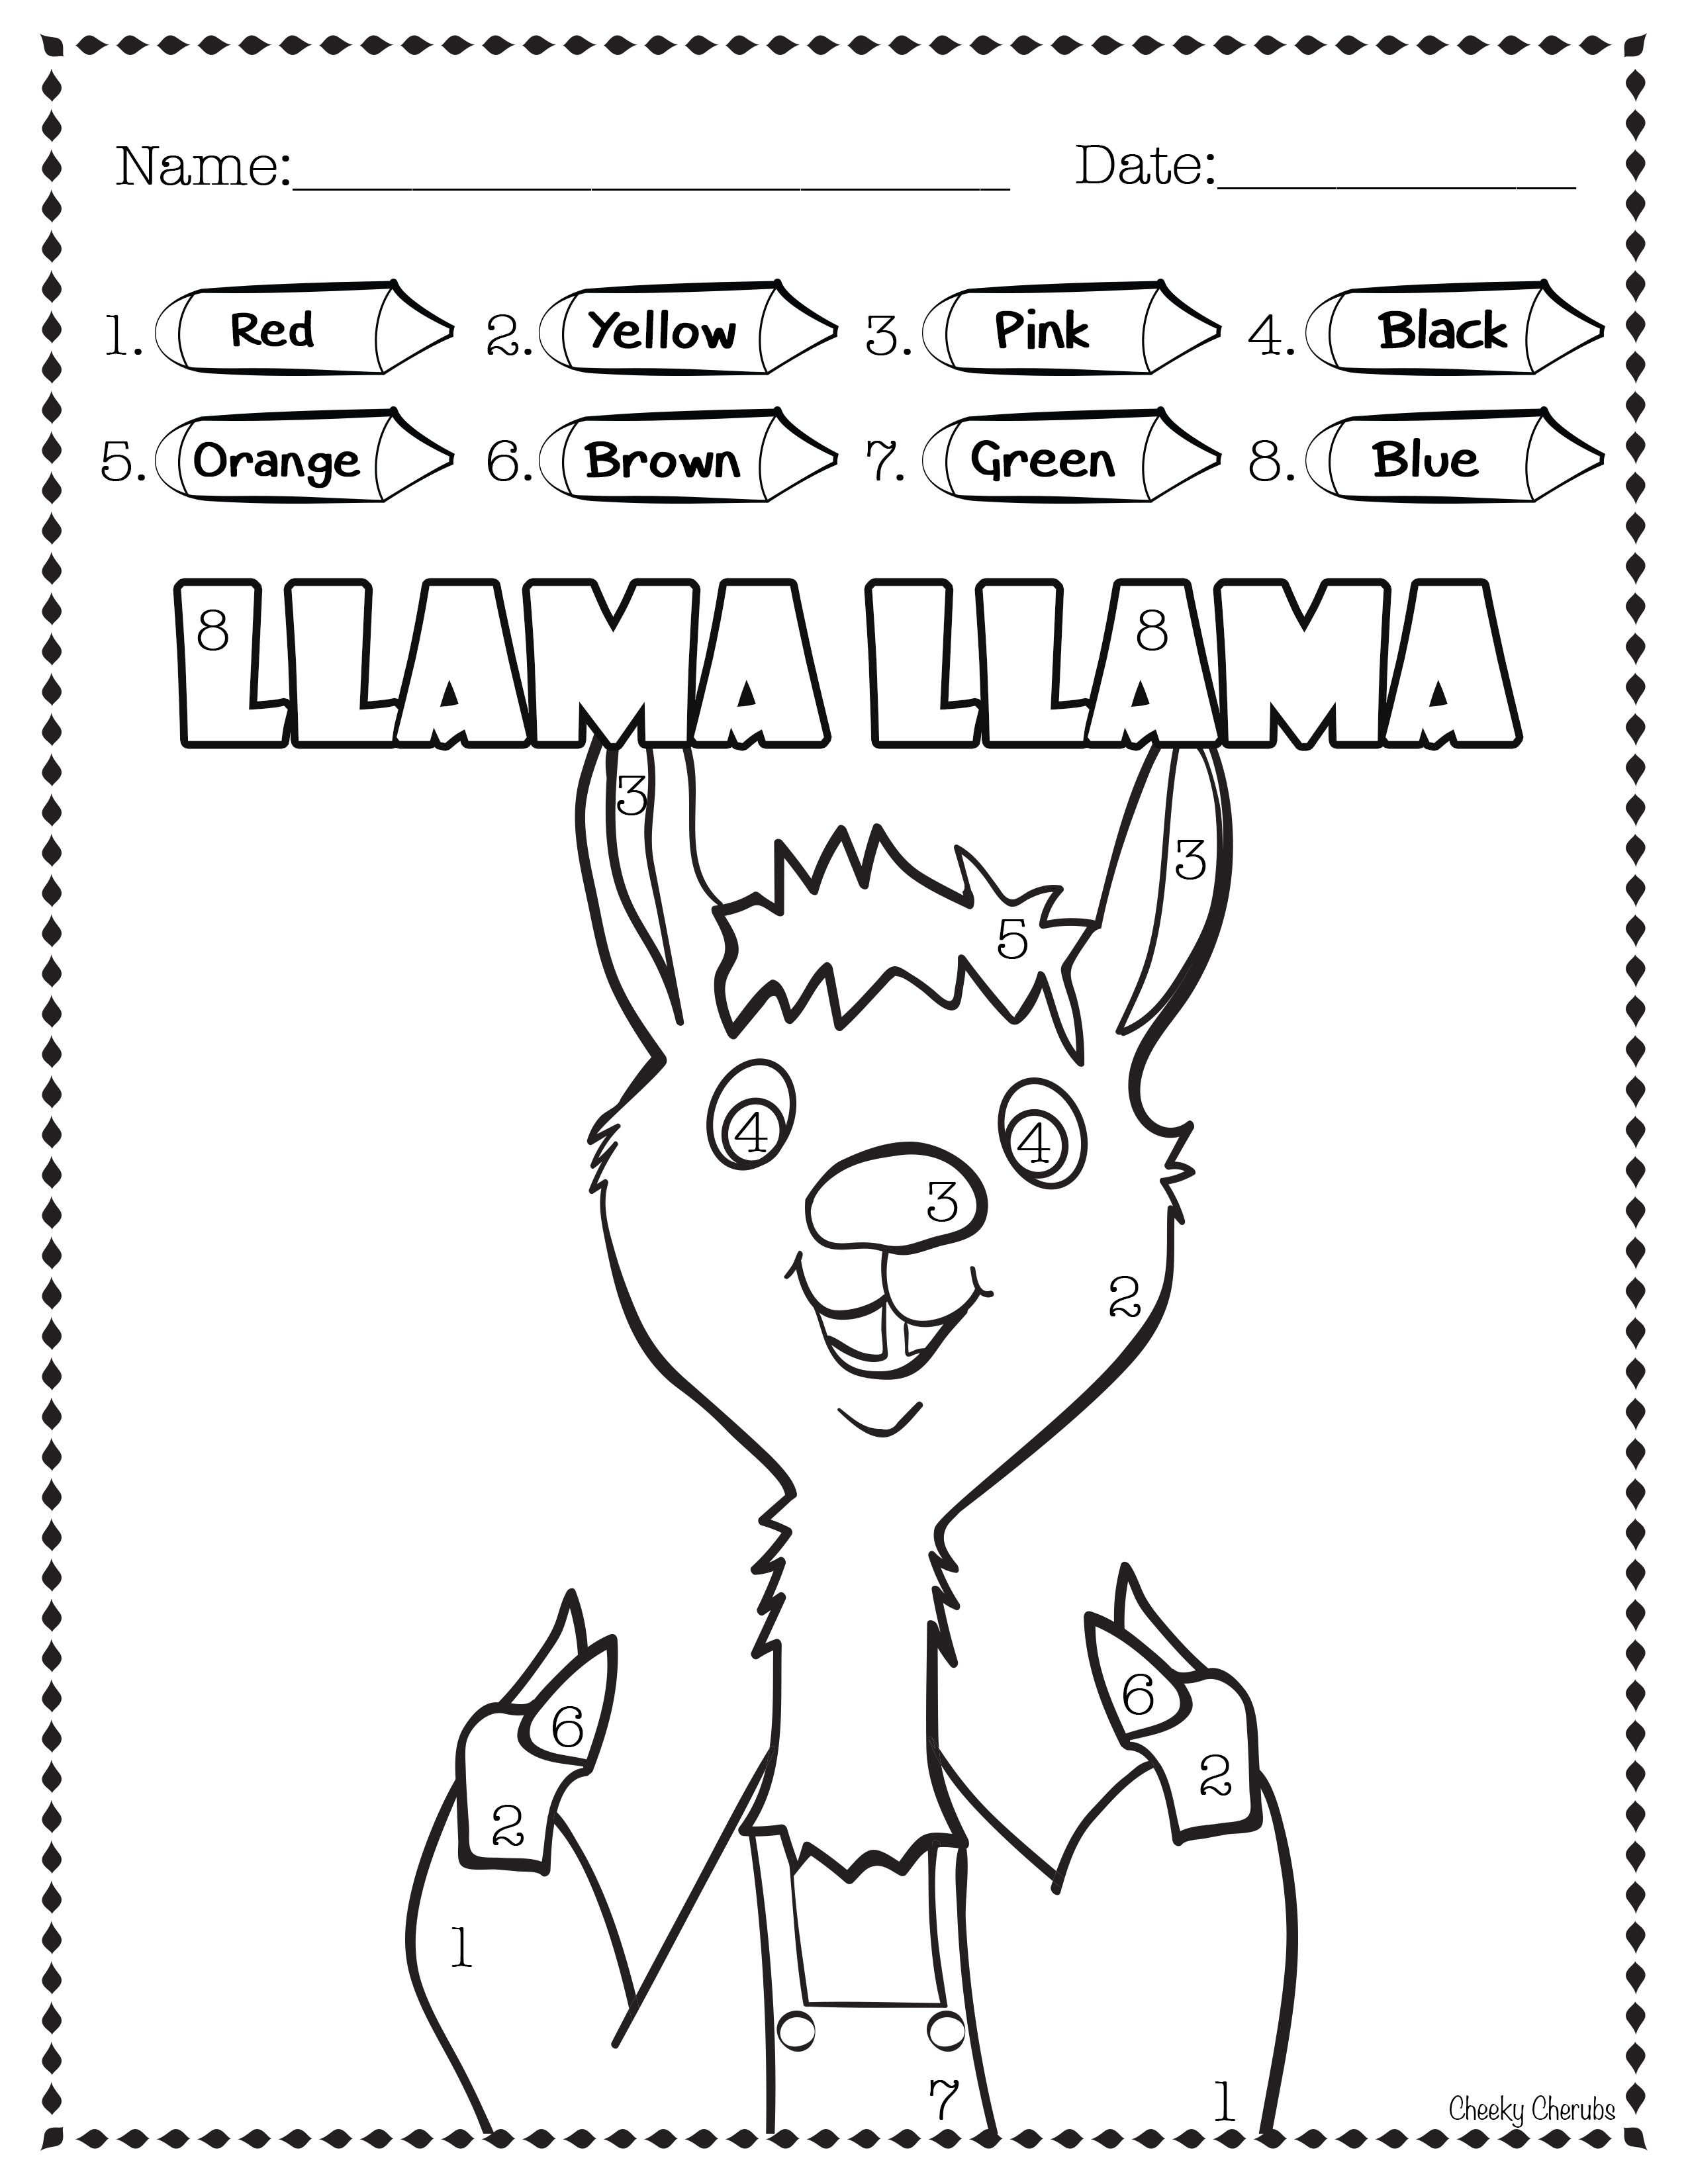 llama-llama-home-with-mama-unit-study-homeschool-unit-study-ideas